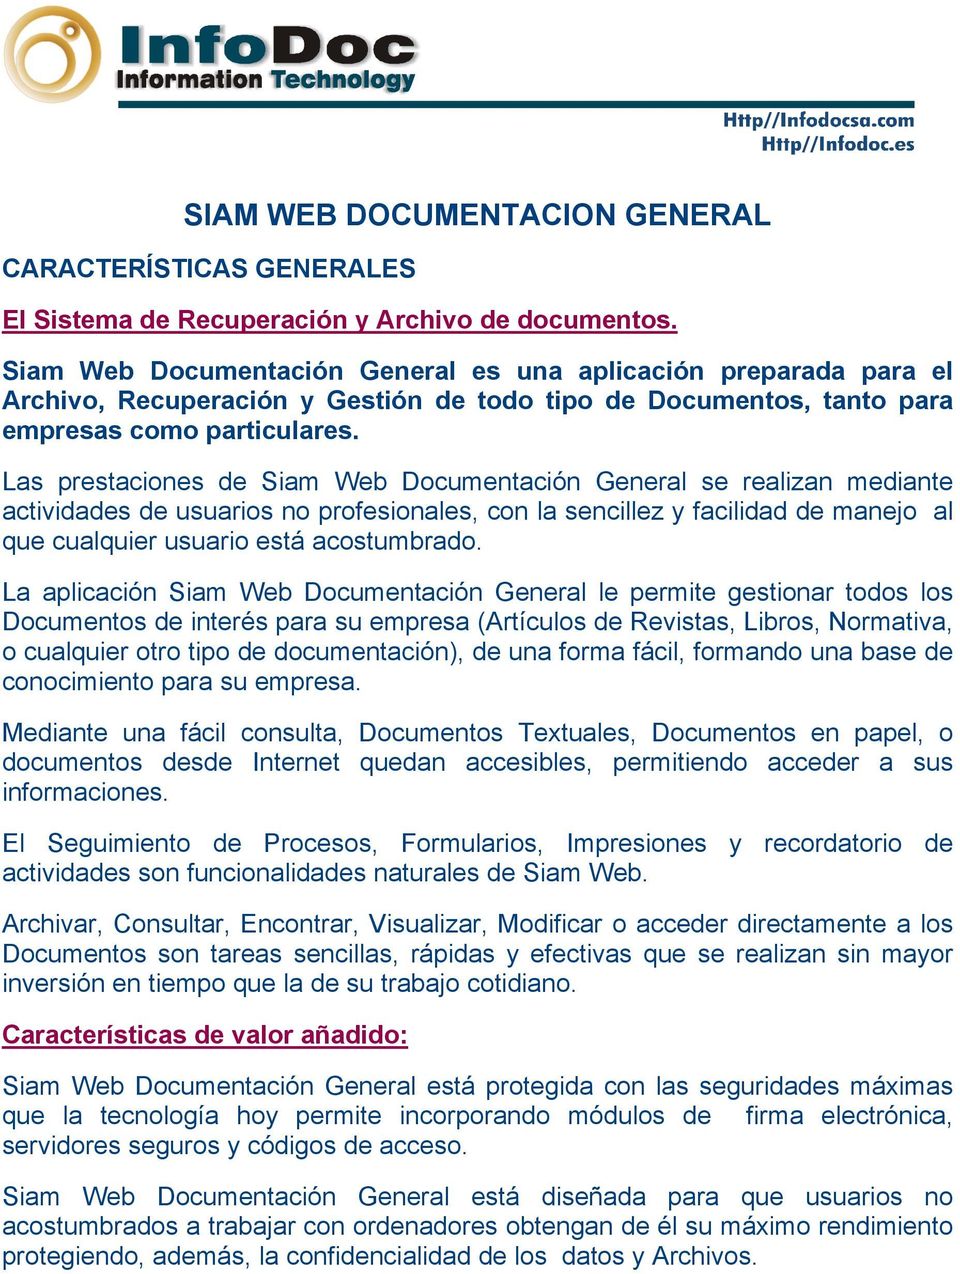 Las prestaciones de Siam Web Documentación General se realizan mediante actividades de usuarios no profesionales, con la sencillez y facilidad de manejo al que cualquier usuario está acostumbrado.